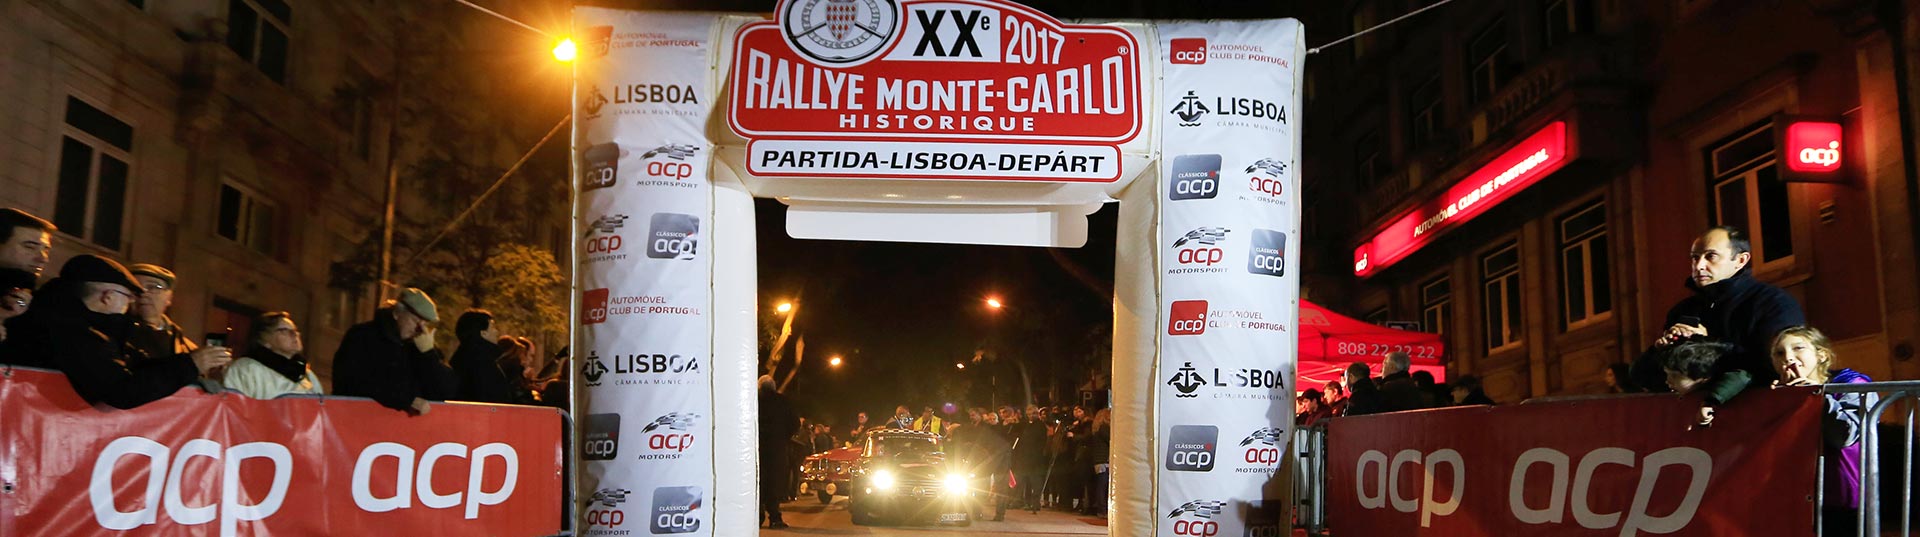 Partida de Lisboa do Rallye de Monte Carlo Histórico 2017